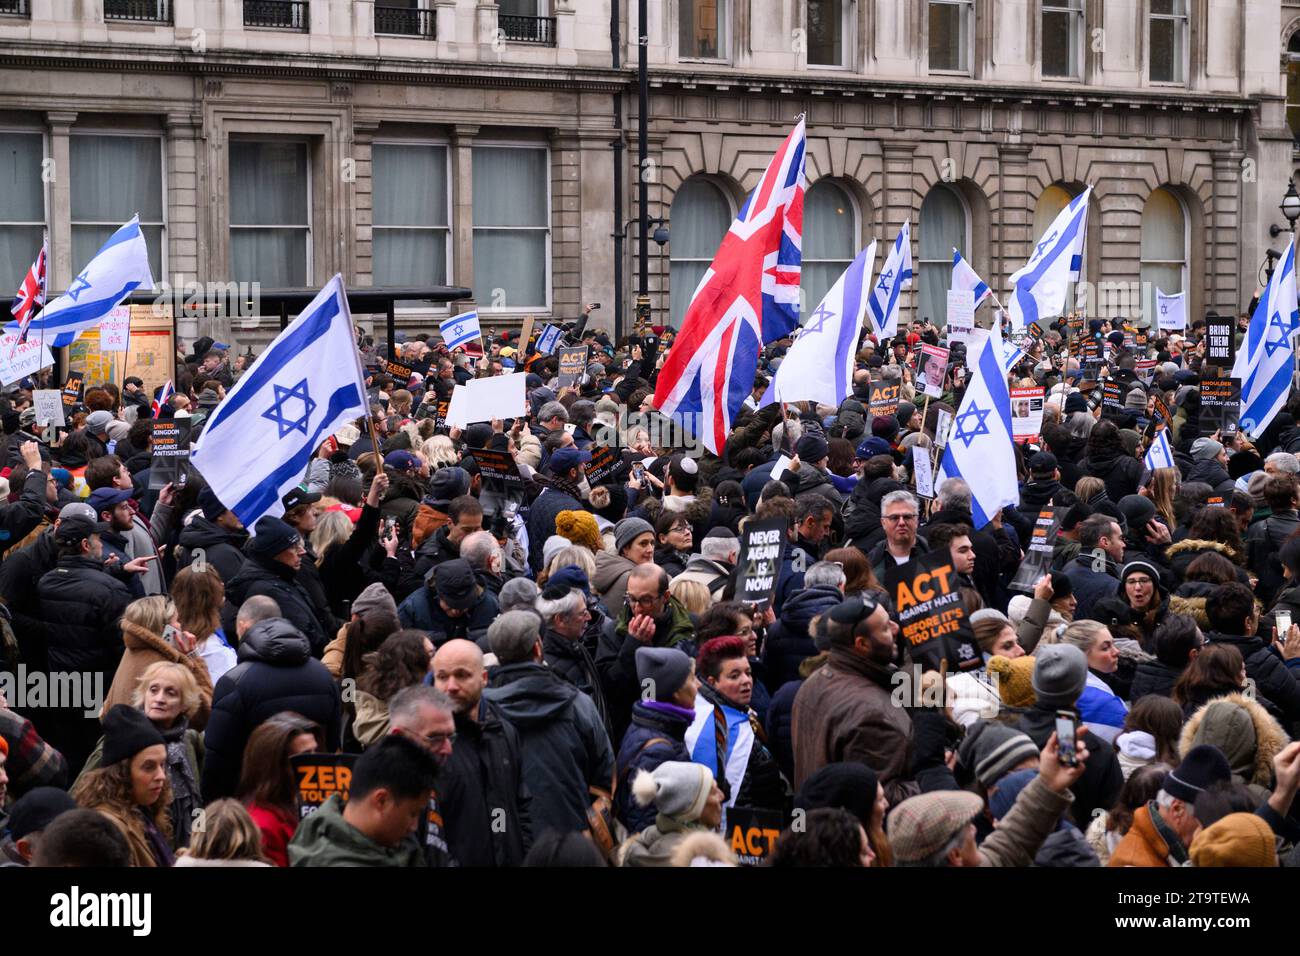 Un rassemblement à Whitehall appelant à la fin de l'antisémitisme, qui s'est intensifié depuis le début du récent conflit israélo-palestinien. Ils ont appelé Banque D'Images